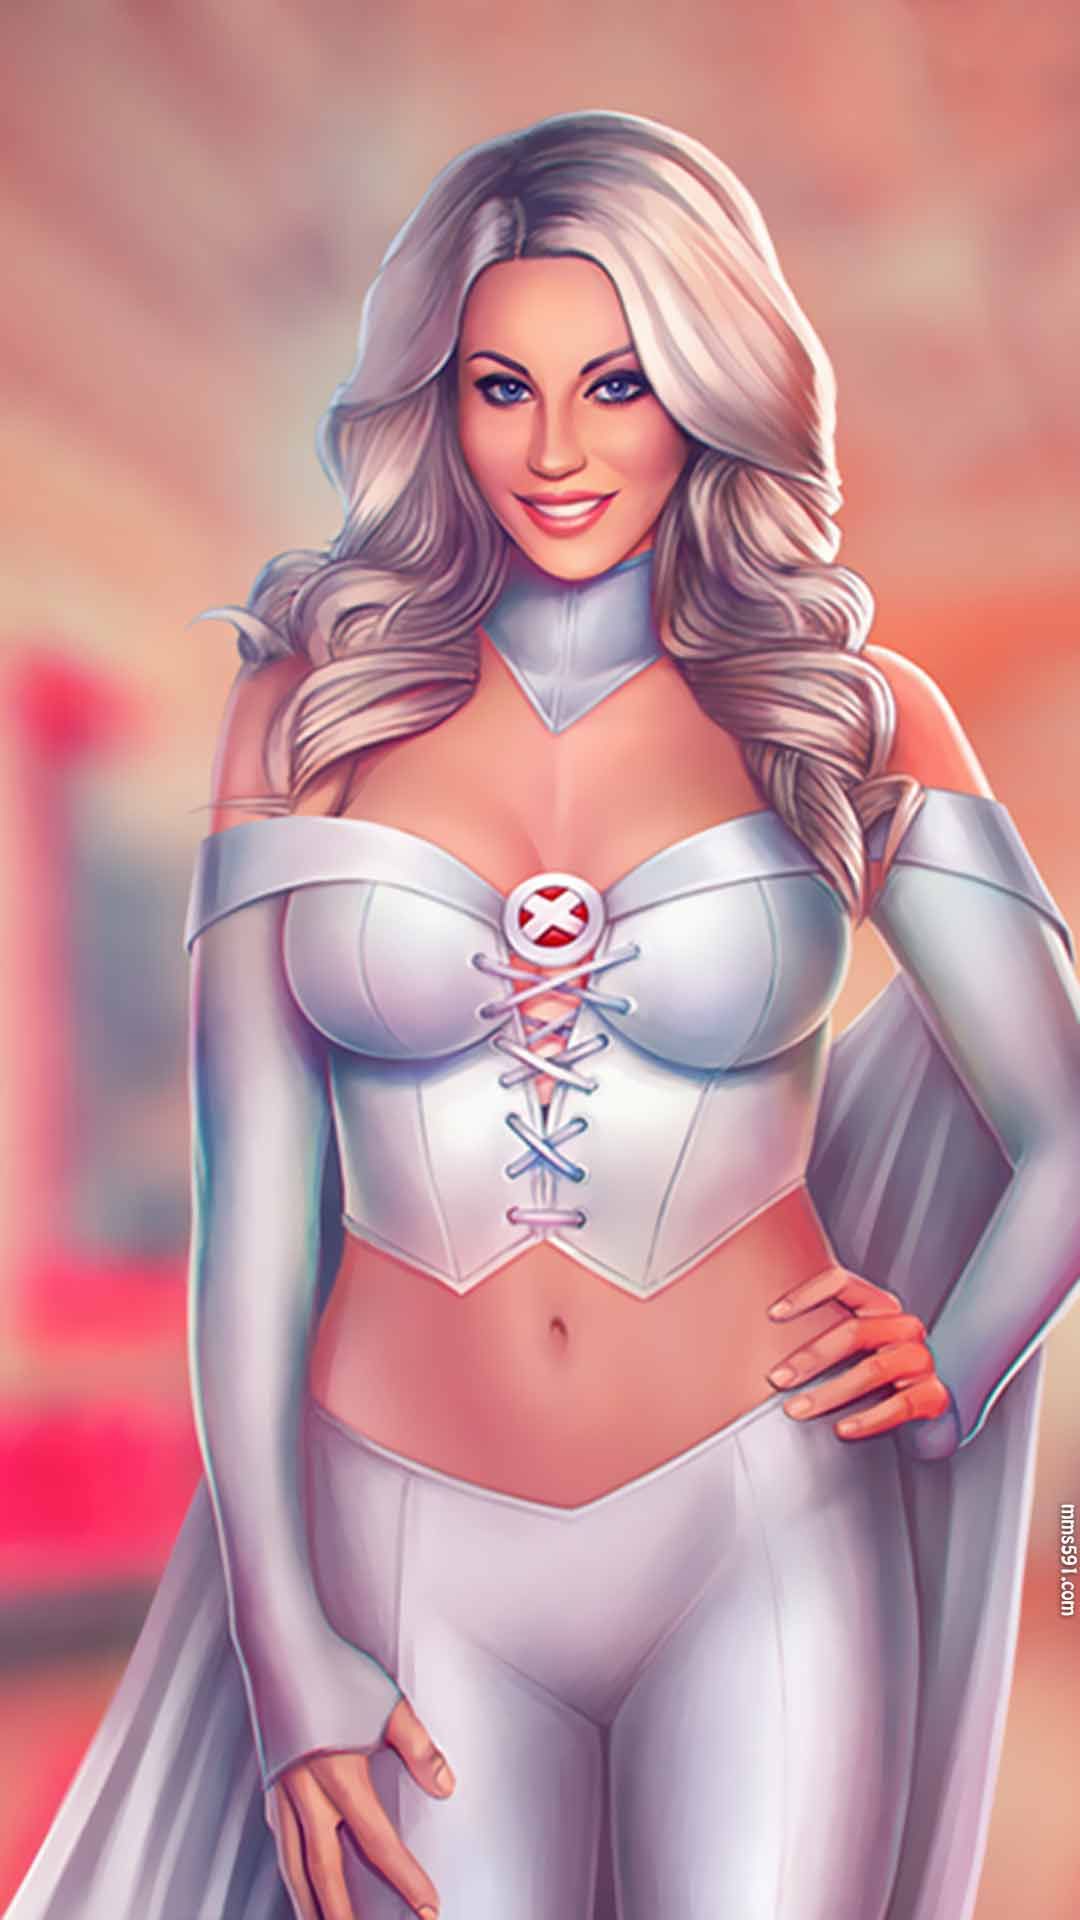 漫威X战警超级英雄白皇后Emma Frost超性感图片手机壁纸(2)